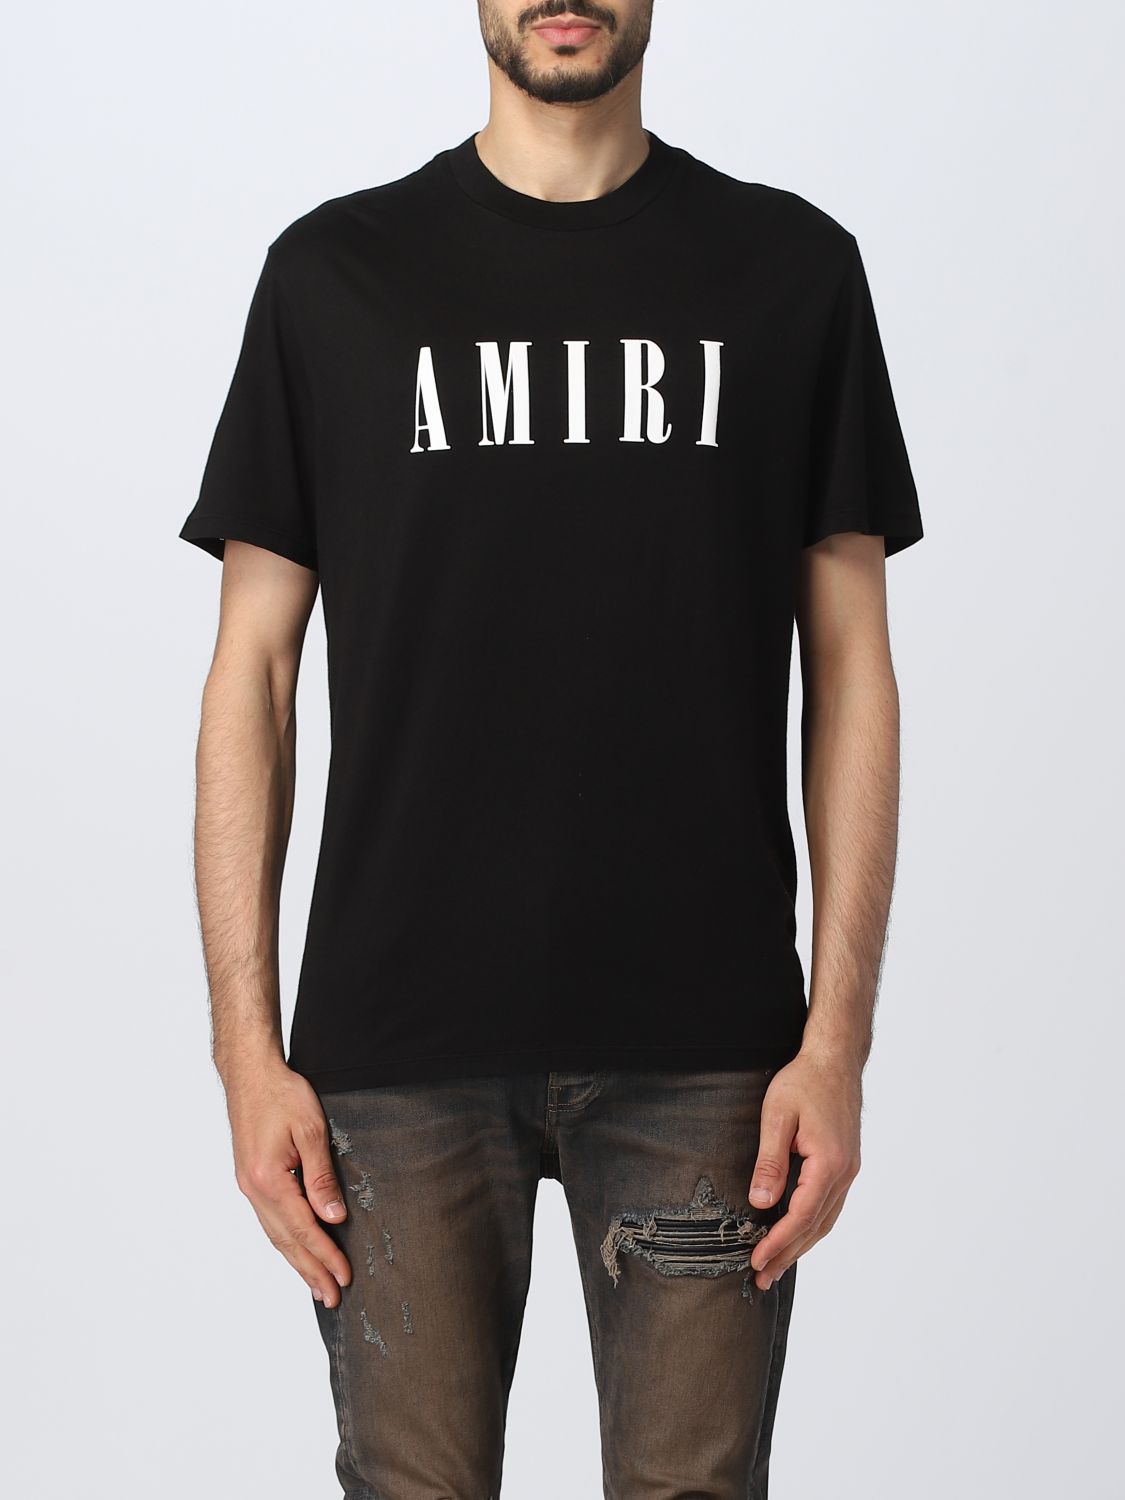 【匿名送料込み】AMIRI 黒 Tシャツ